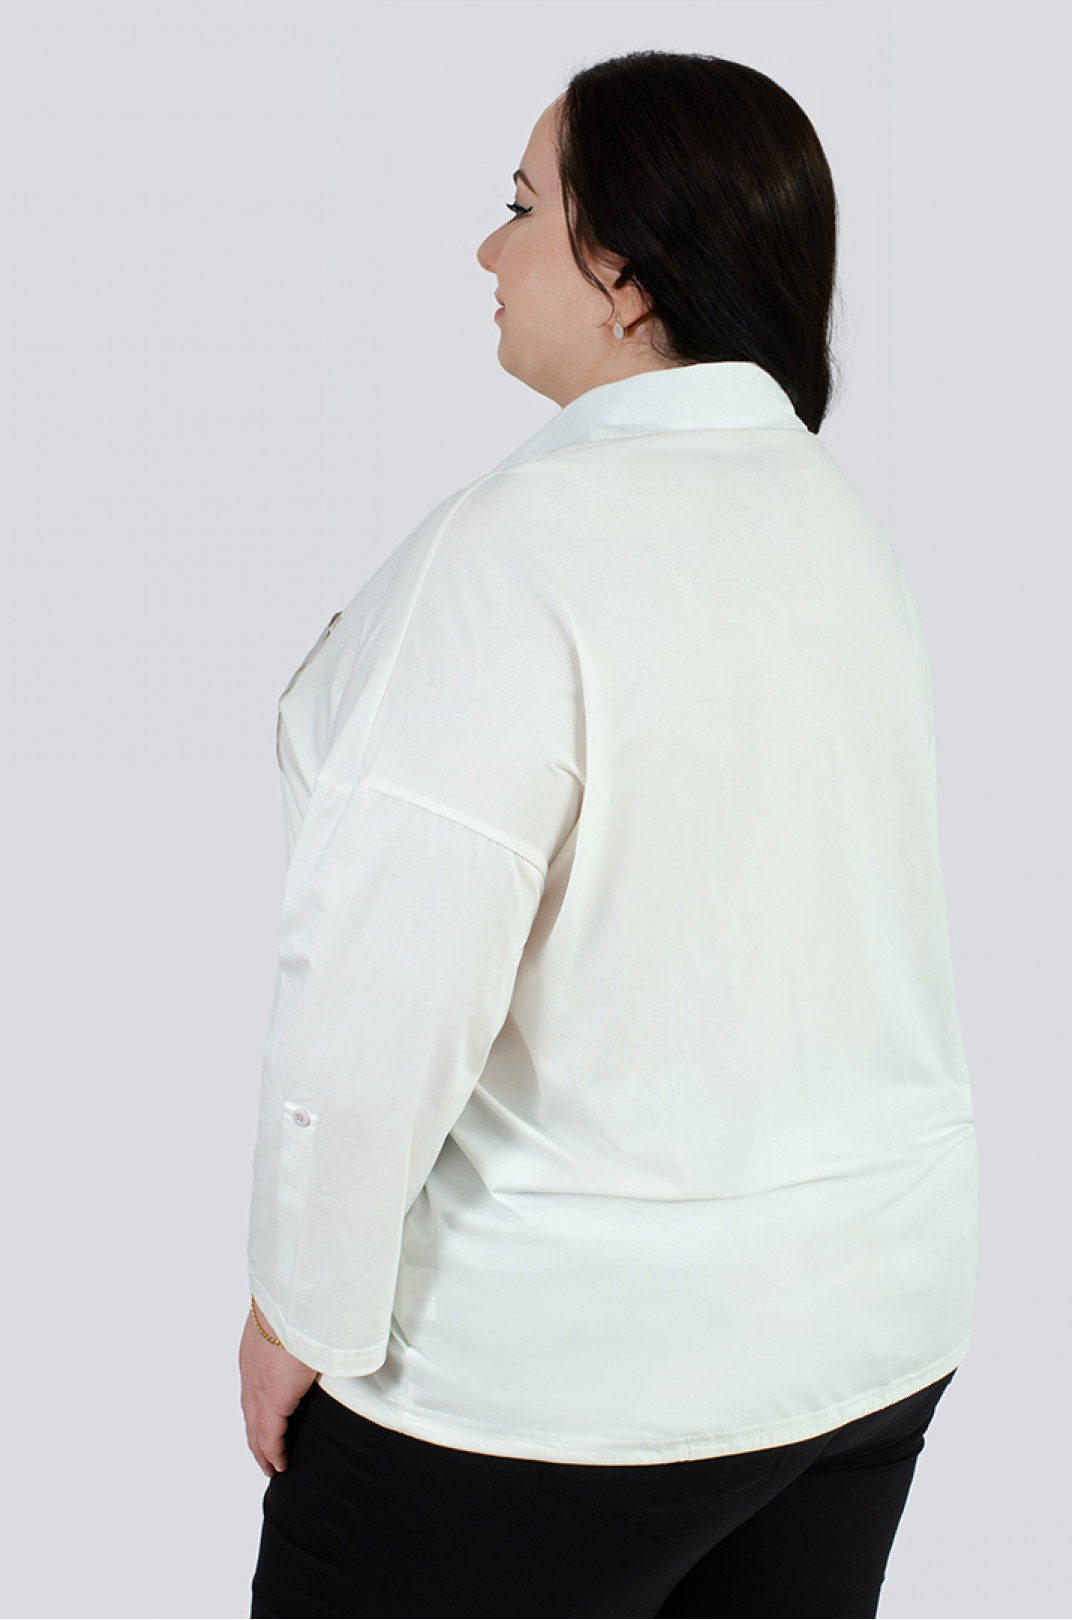 Коттоновая рубашка с завязками больших размеров